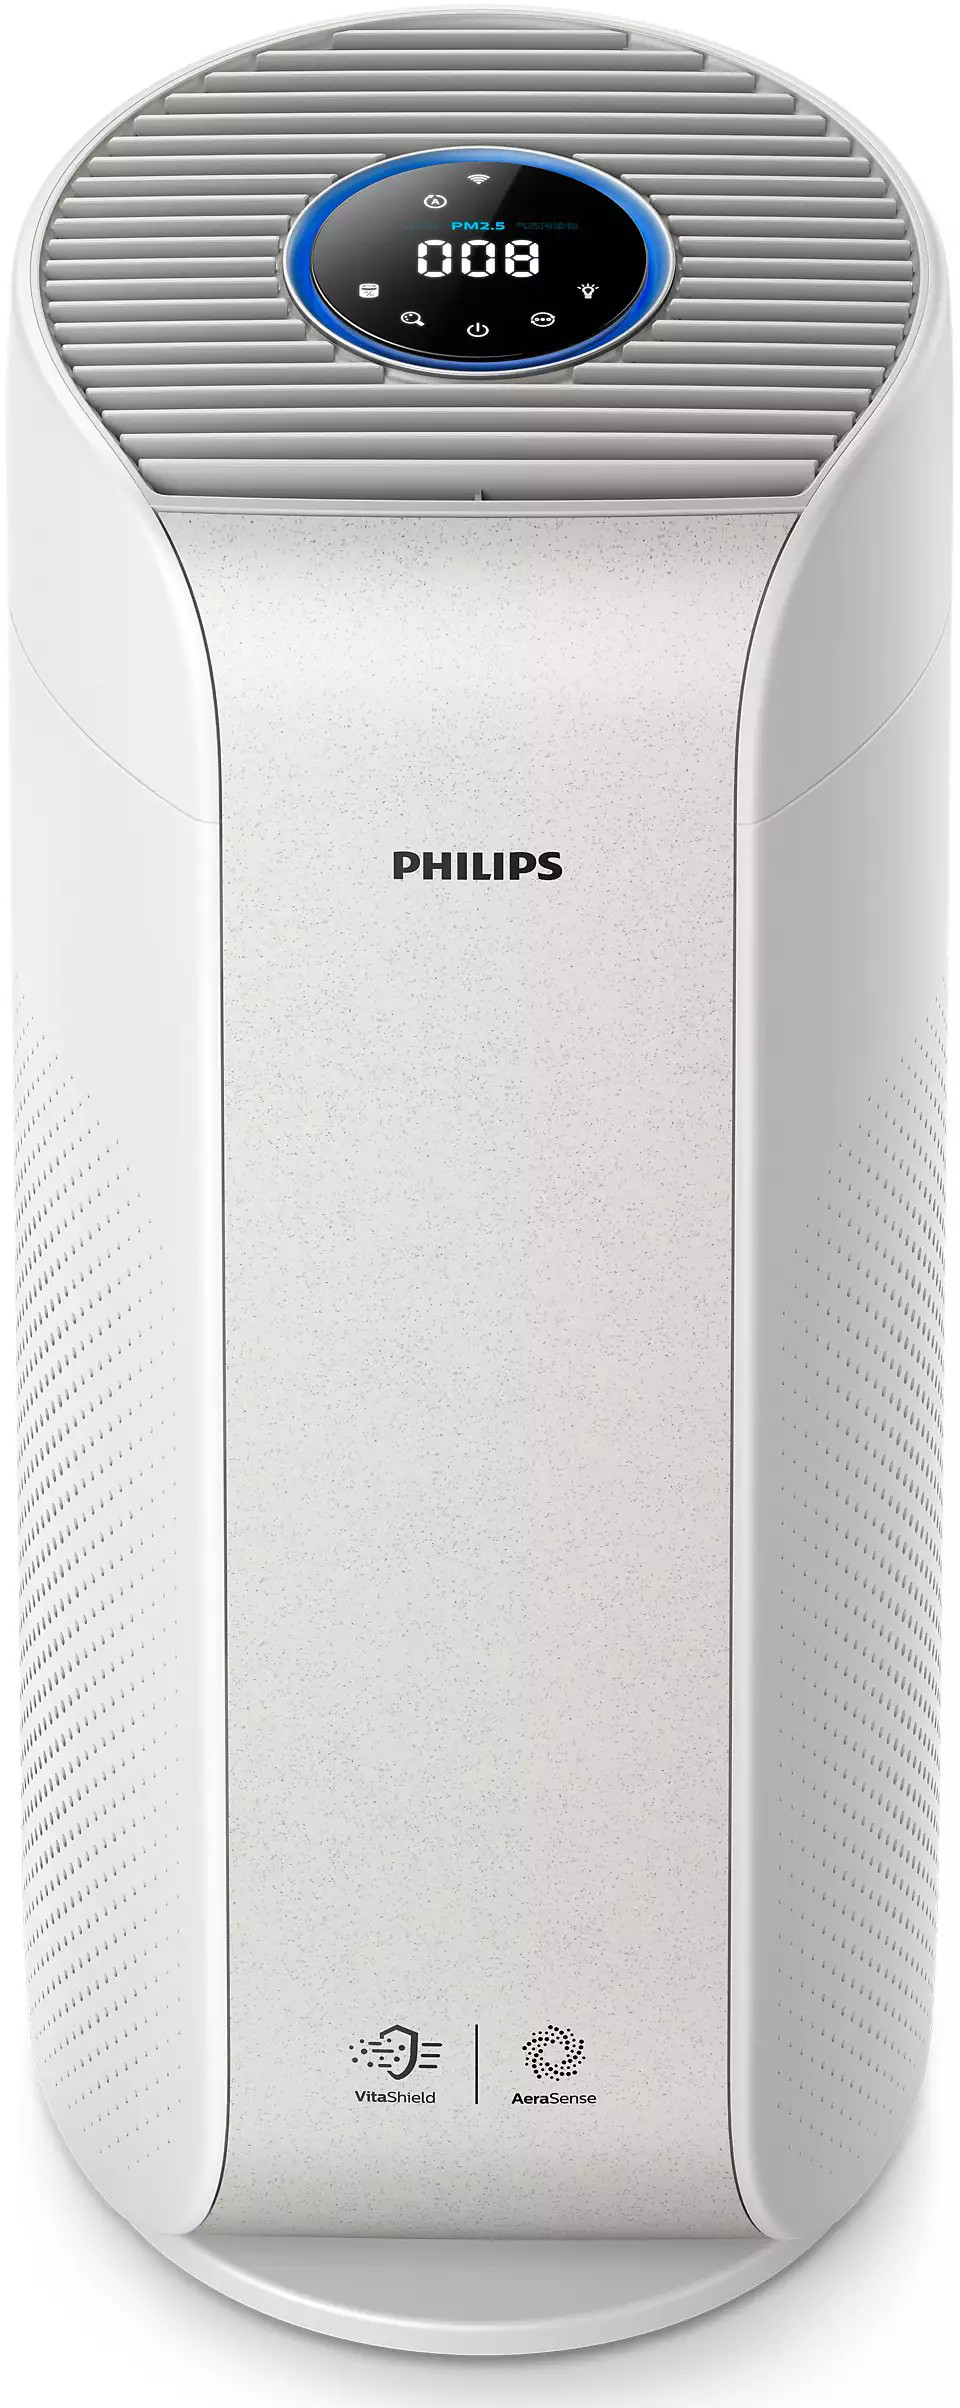 Купить очиститель воздуха philips с hepa фильтром Philips AC3055/51 в Киеве